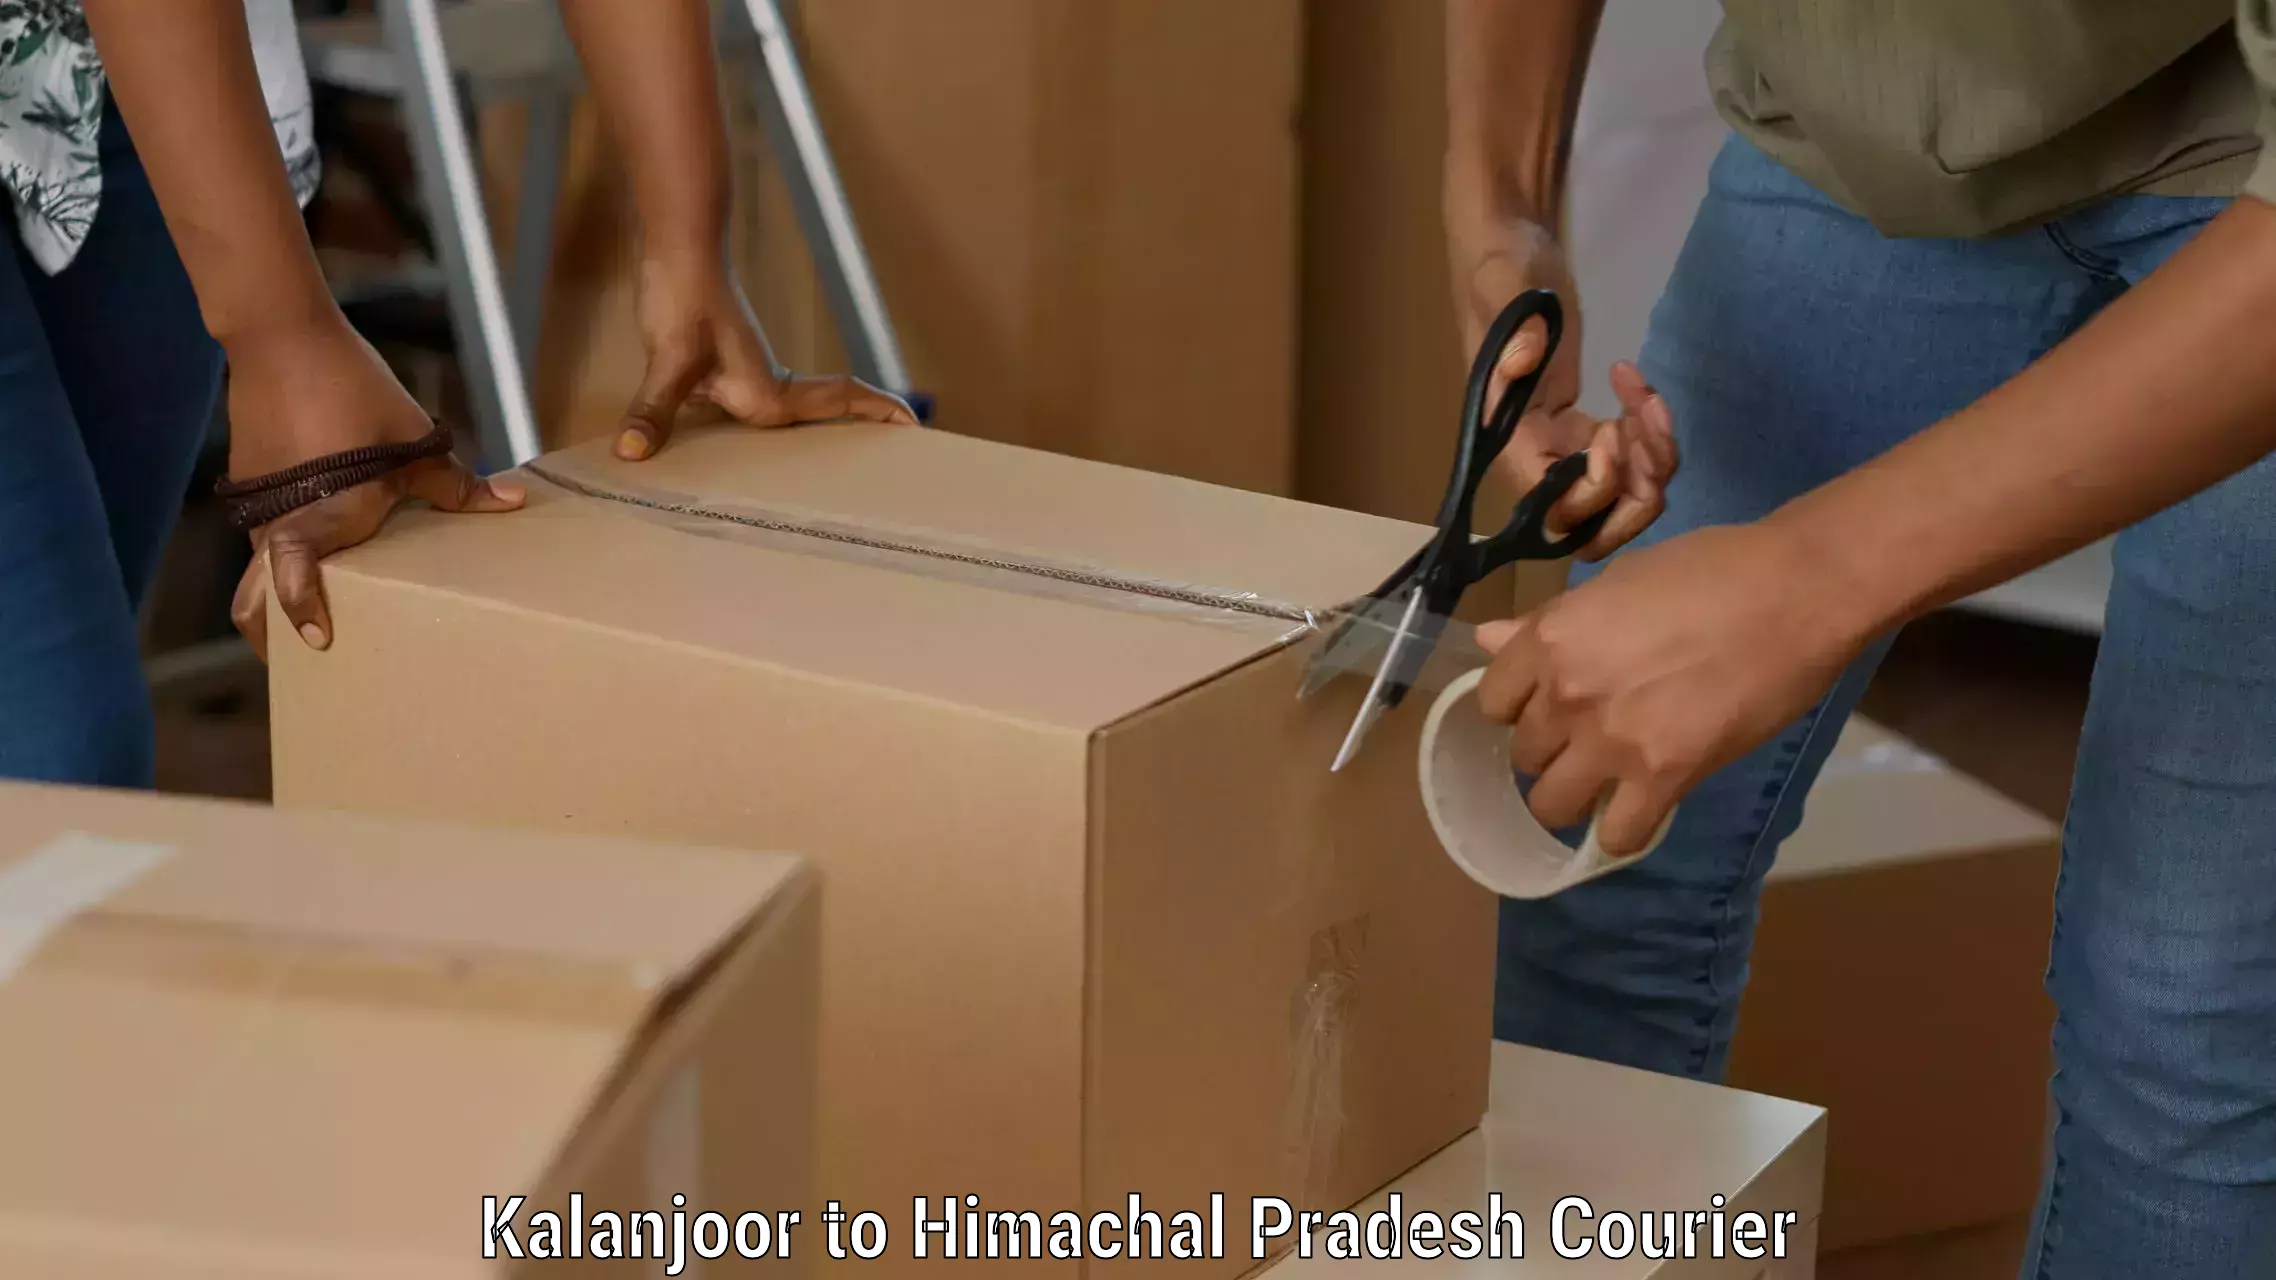 Flexible parcel services Kalanjoor to Himachal Pradesh